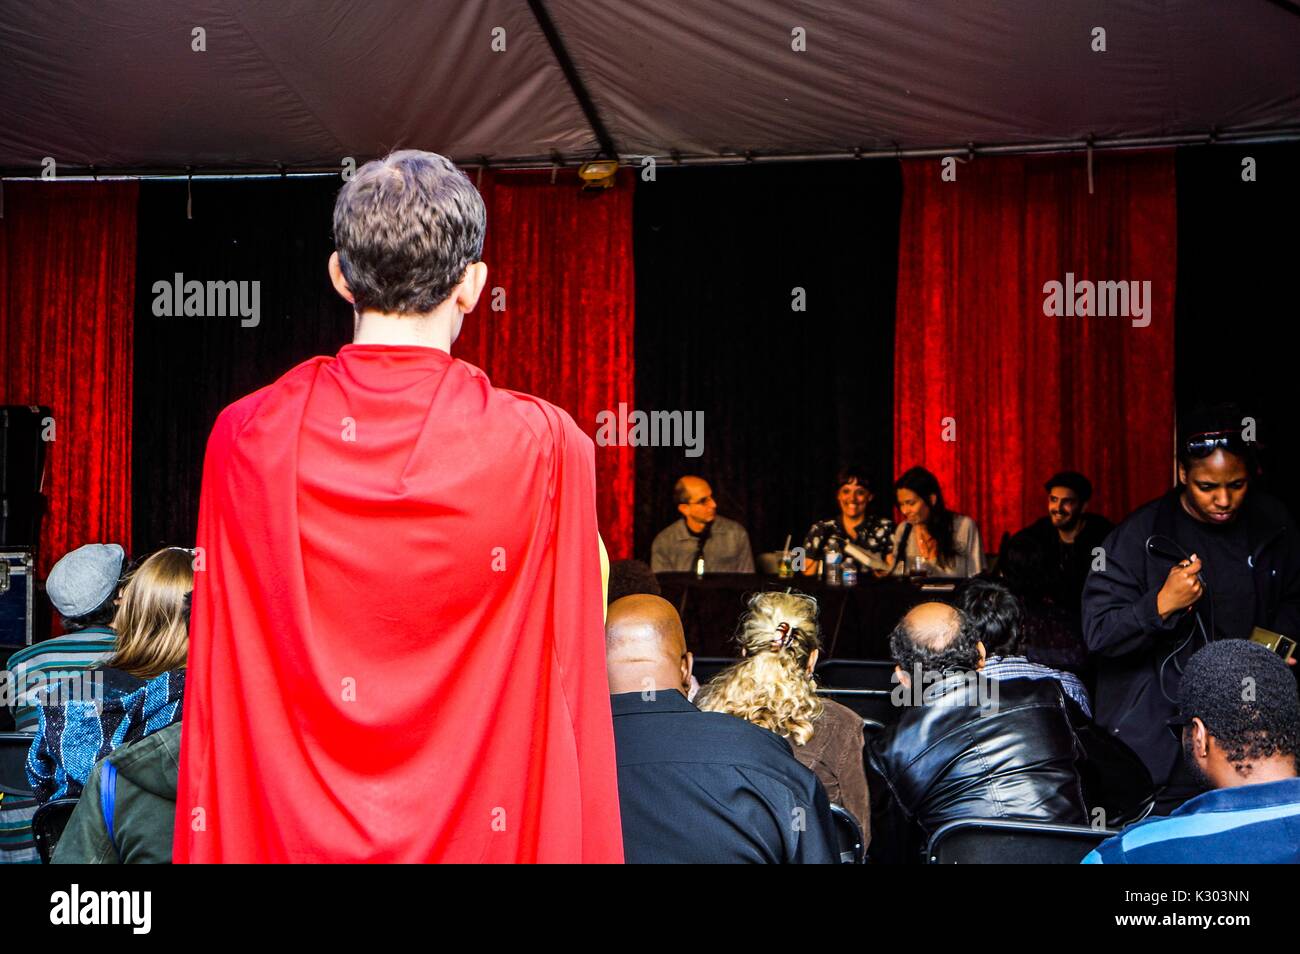 Un jeune homme avec une cape rouge est à la recherche à une discussion de groupe en face de draperies rouges avec une foule de gens assis et regarder, au Baltimore Book Festival, Baltimore, Maryland, Septembre, 2013. Banque D'Images